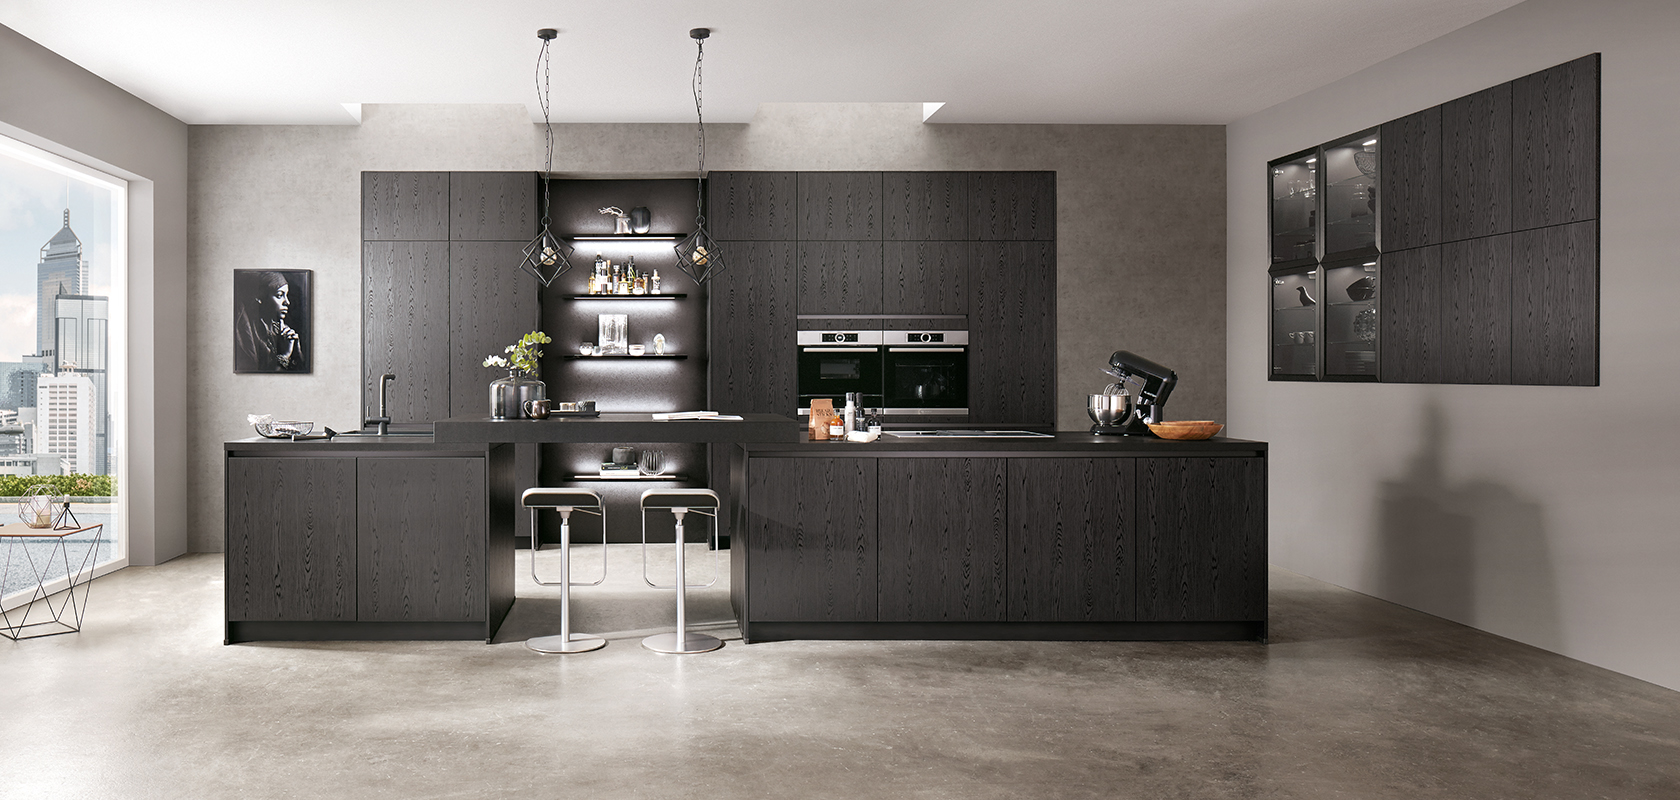 Moderne keukenontwerp met strakke zwarte kasten, roestvrijstalen apparaten en een centraal eiland met barkrukken tegen een achtergrond van grijze betonstructuren.